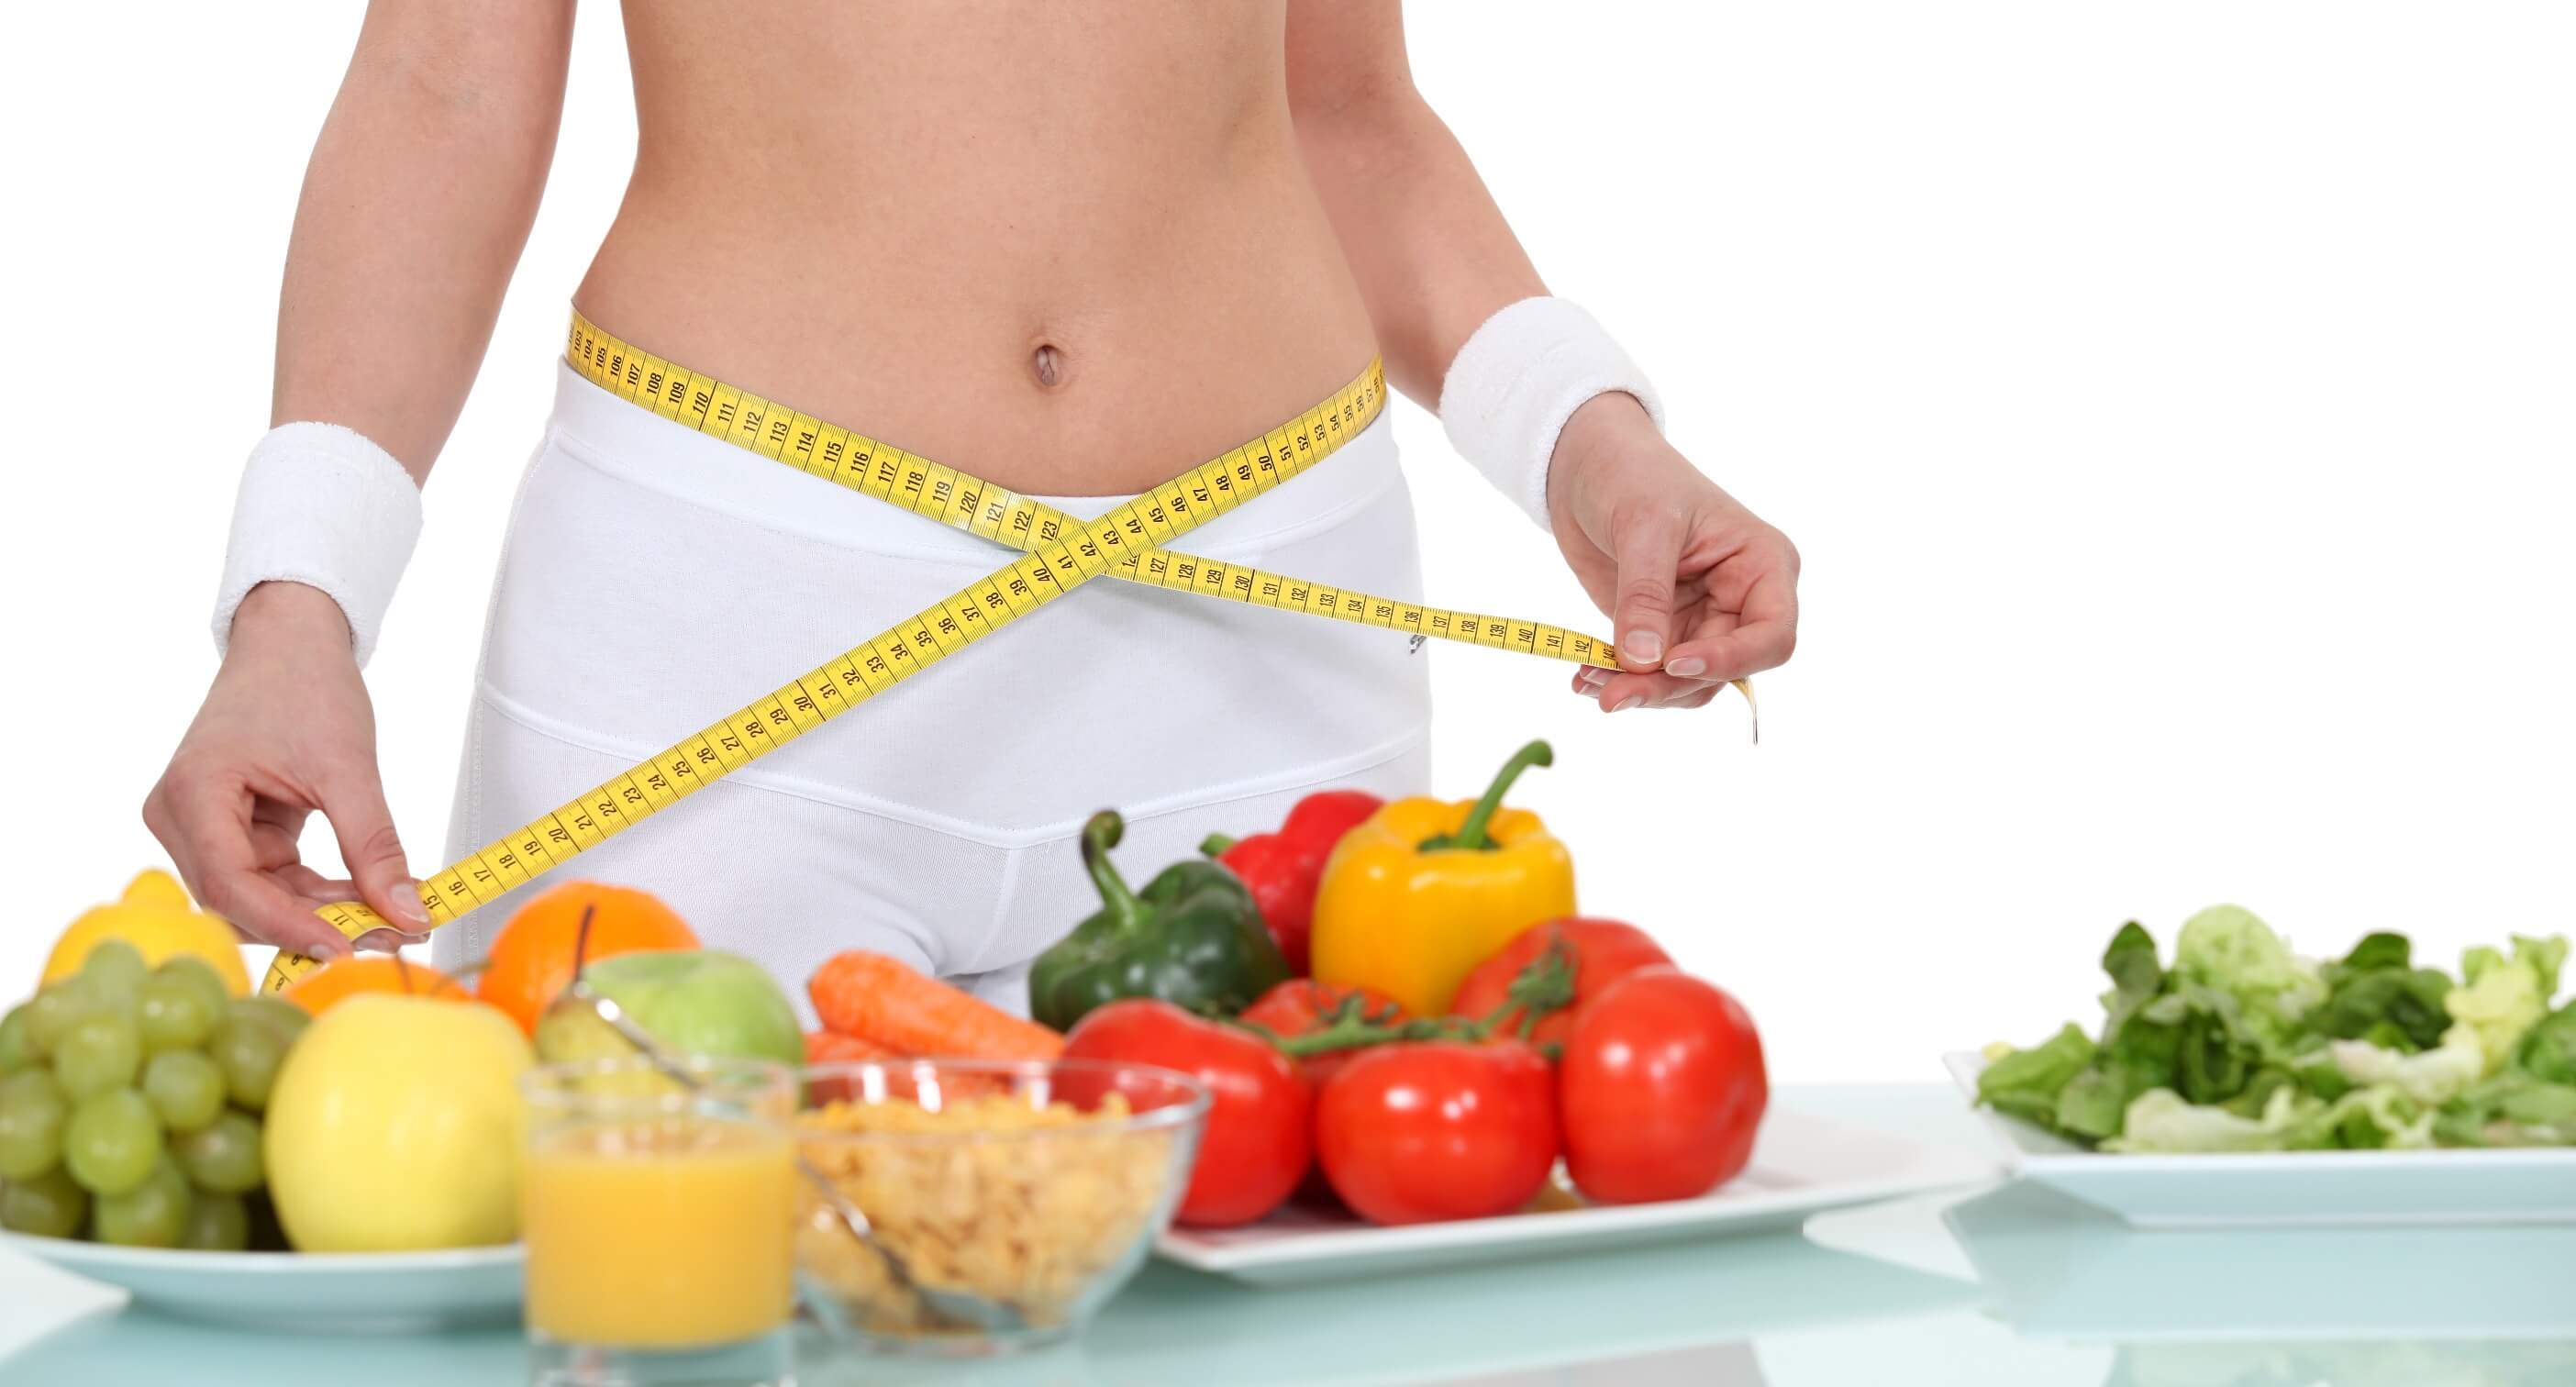 Правильное питание для снижения веса